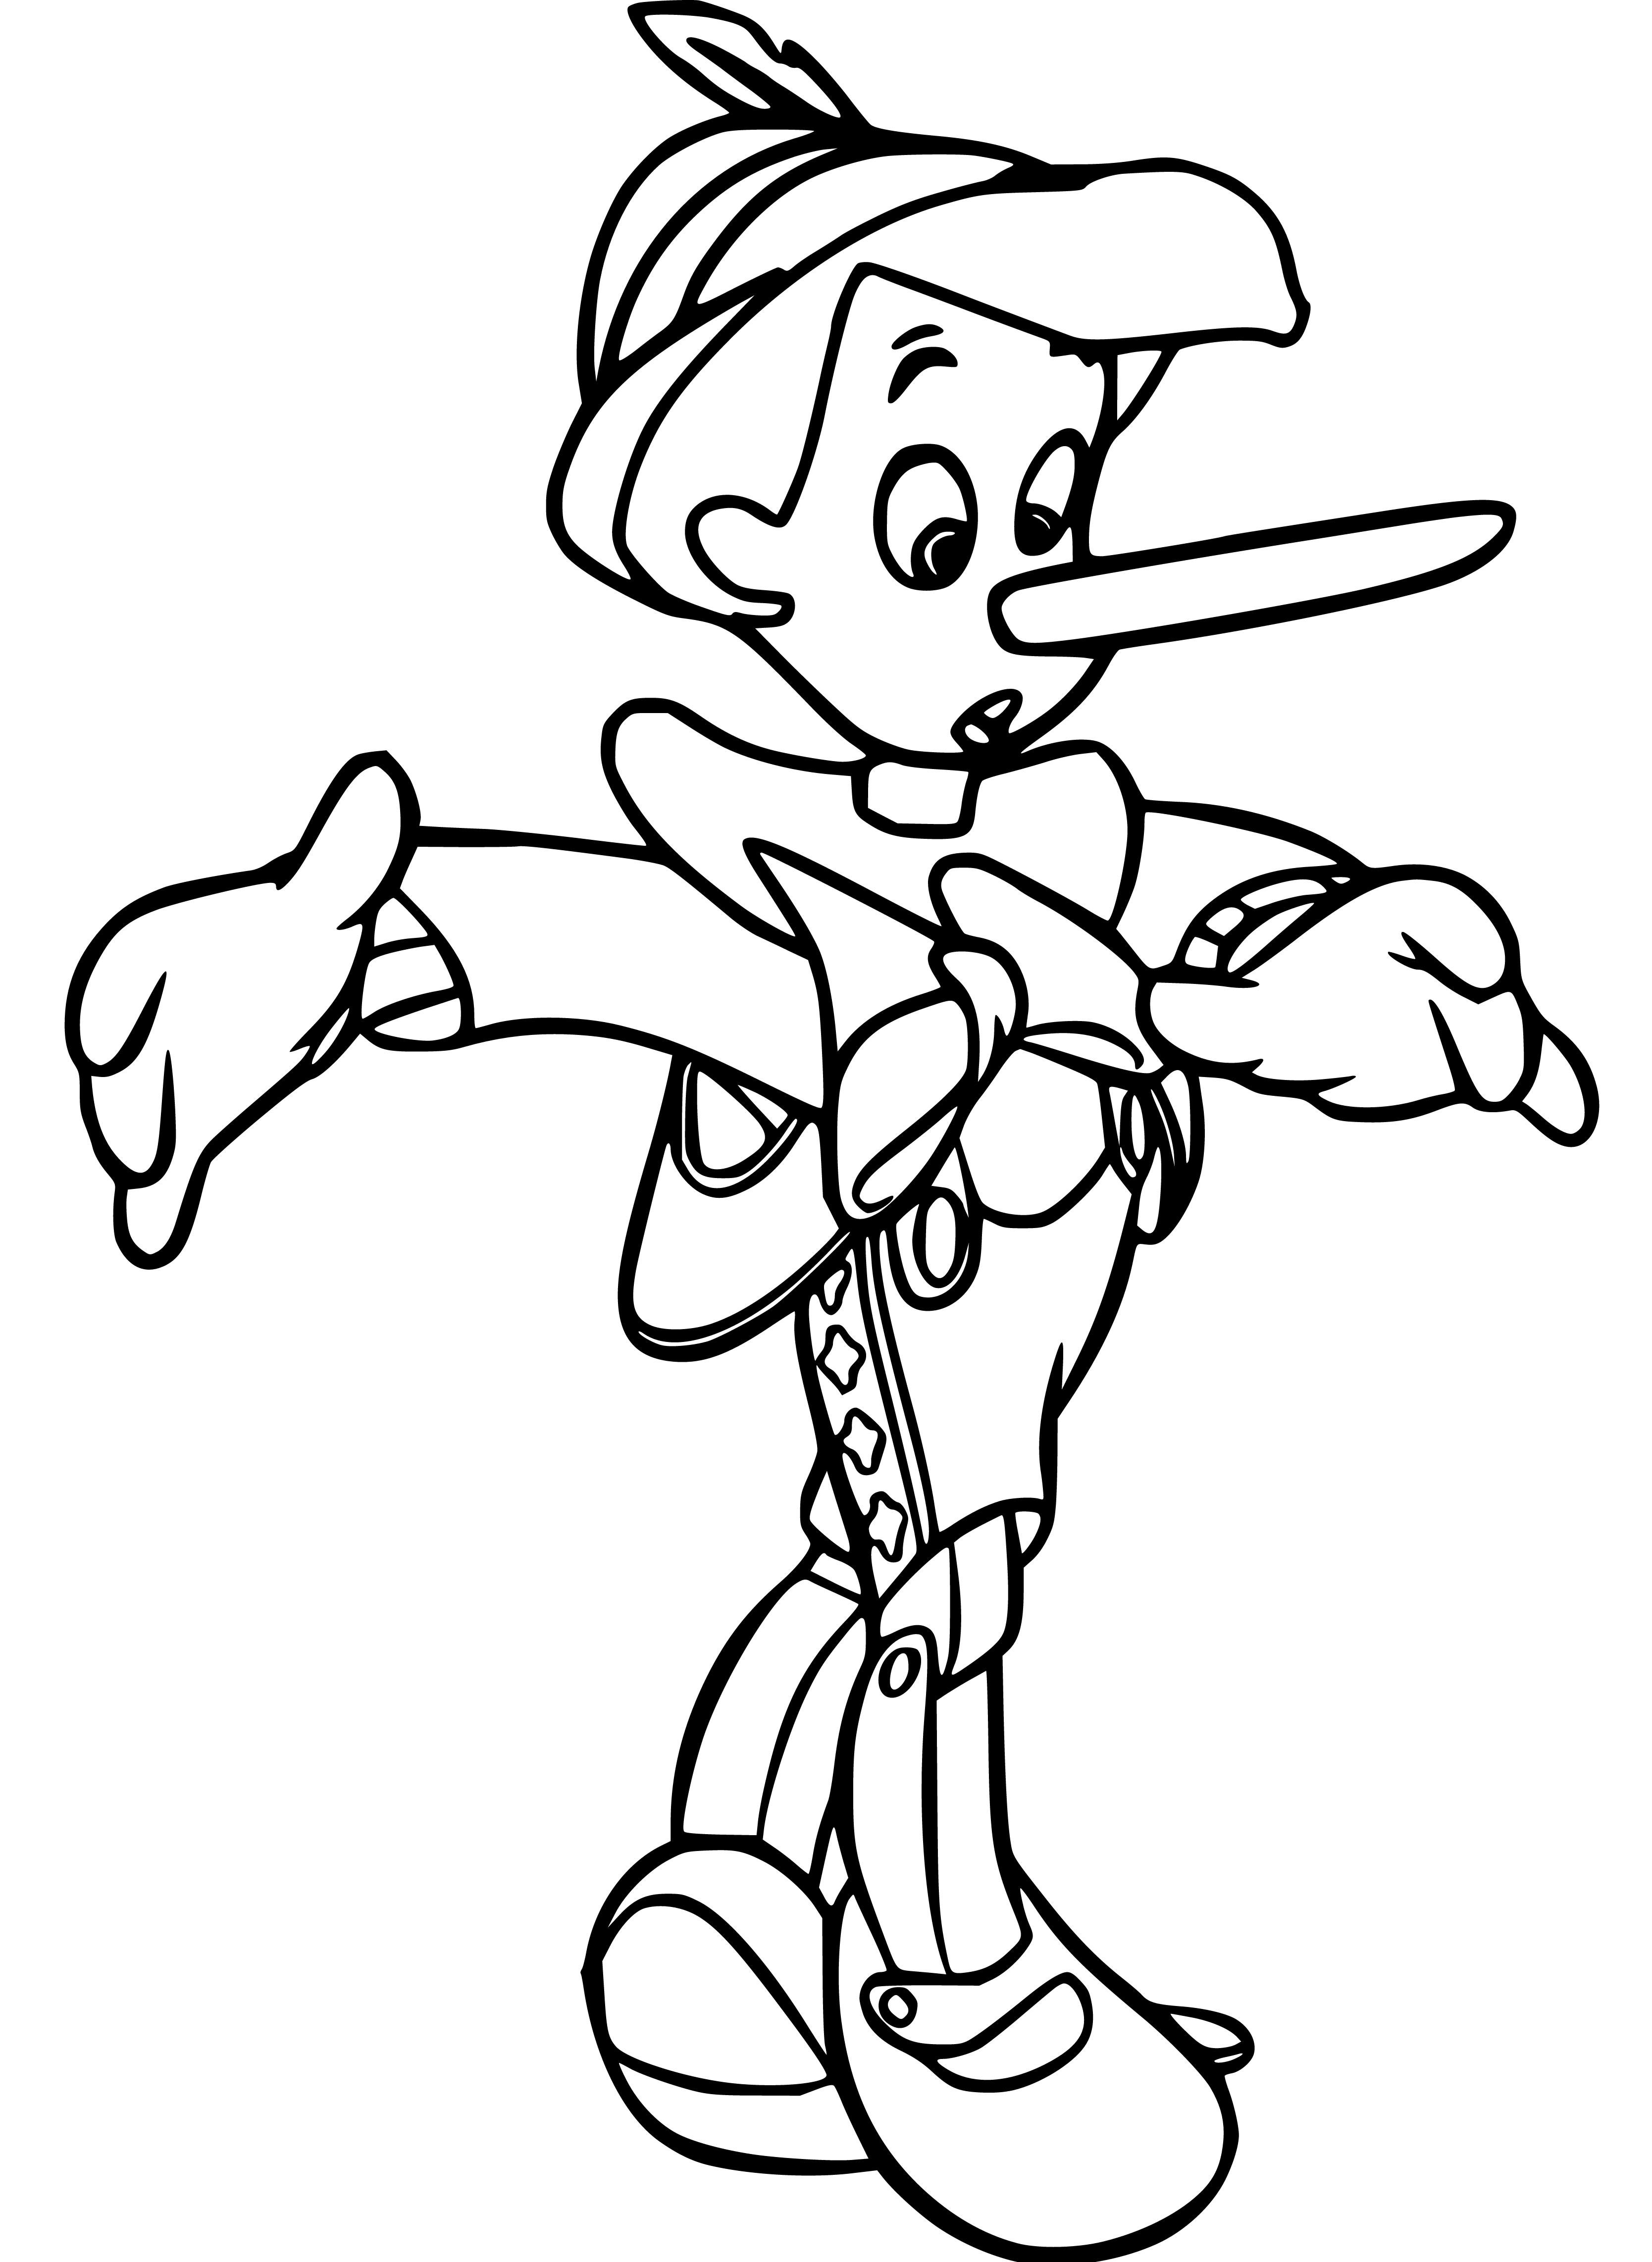 Pinocchio Long Nose Sketching to Color - SheetalColor.com